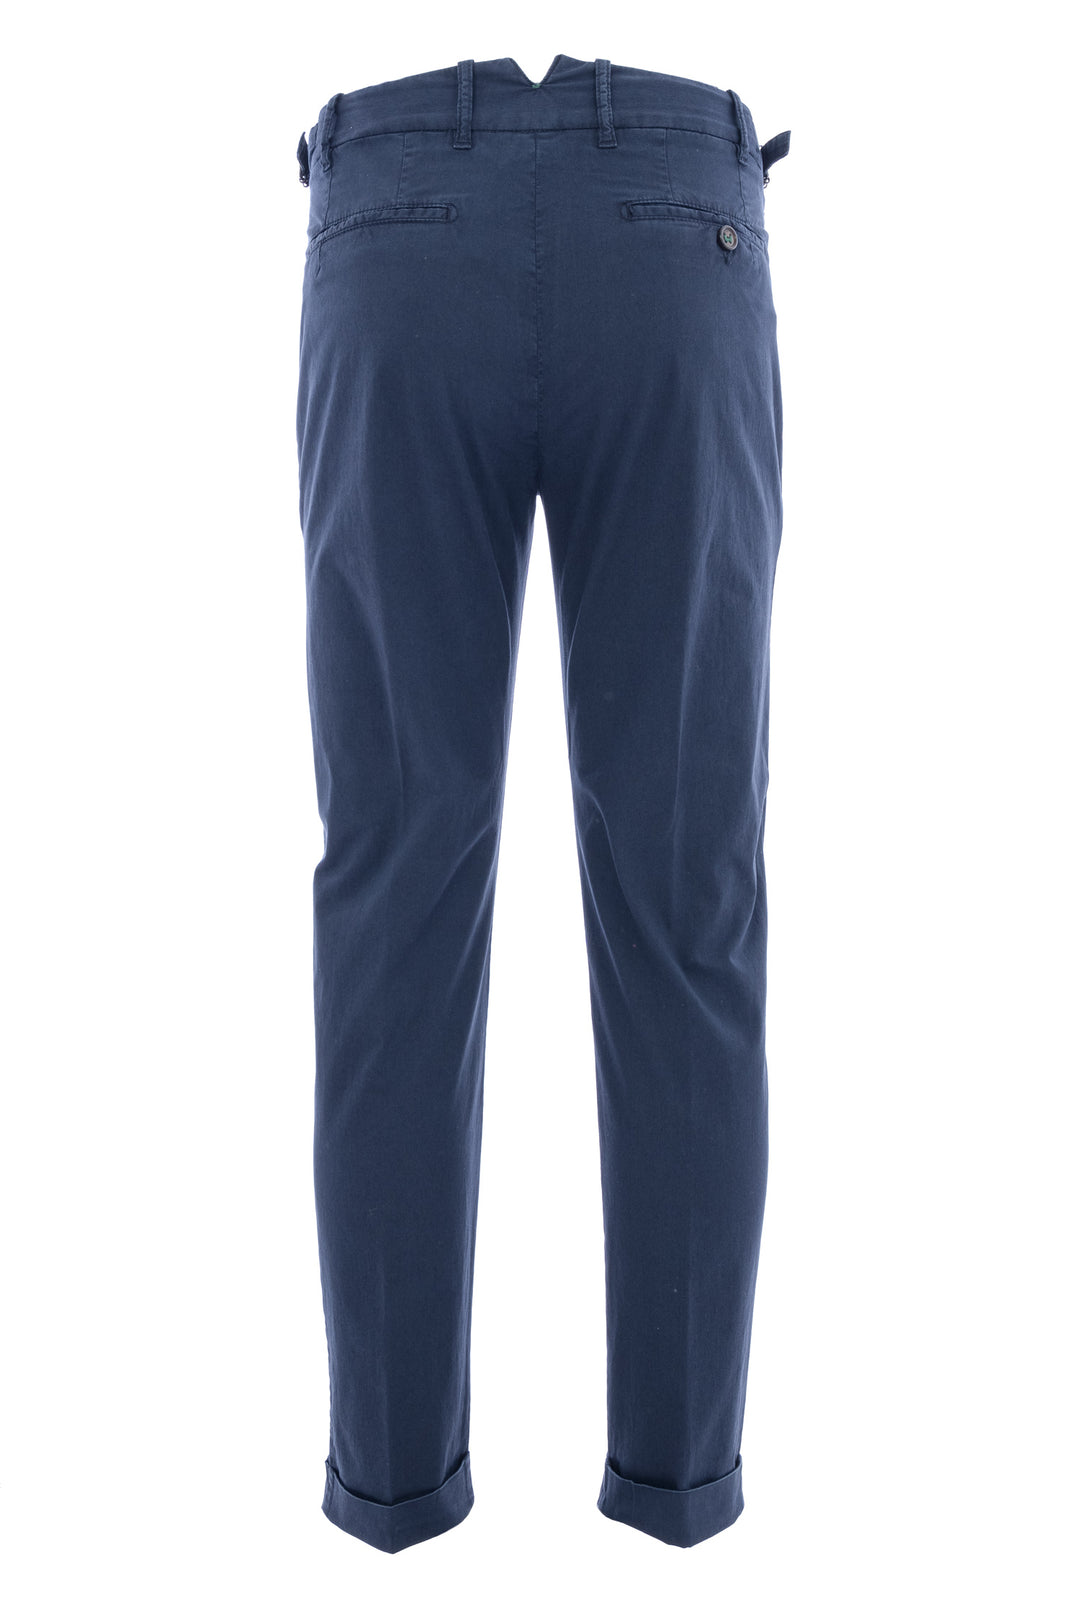 BERWICH Pantalone in gabardina di cotone elasticizzato blu navy - Mancinelli 1954